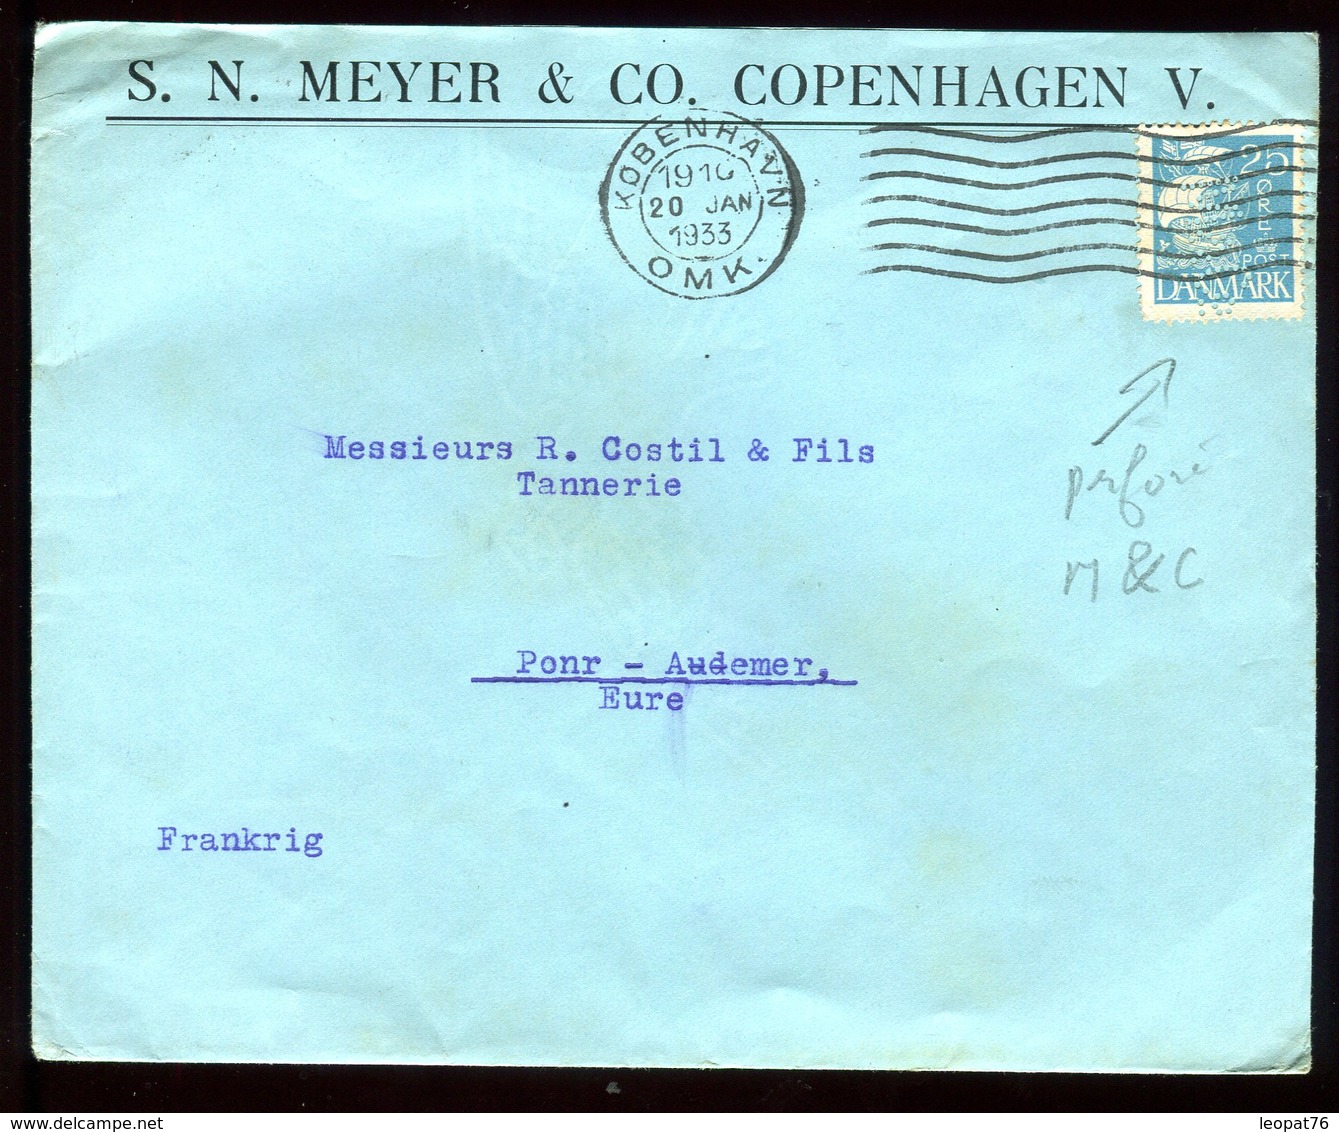 Danemark - Perforé M&C Sur Enveloppe Commerciale De Copenhague Pour La France En 1933 - Réf O40 - Lettres & Documents